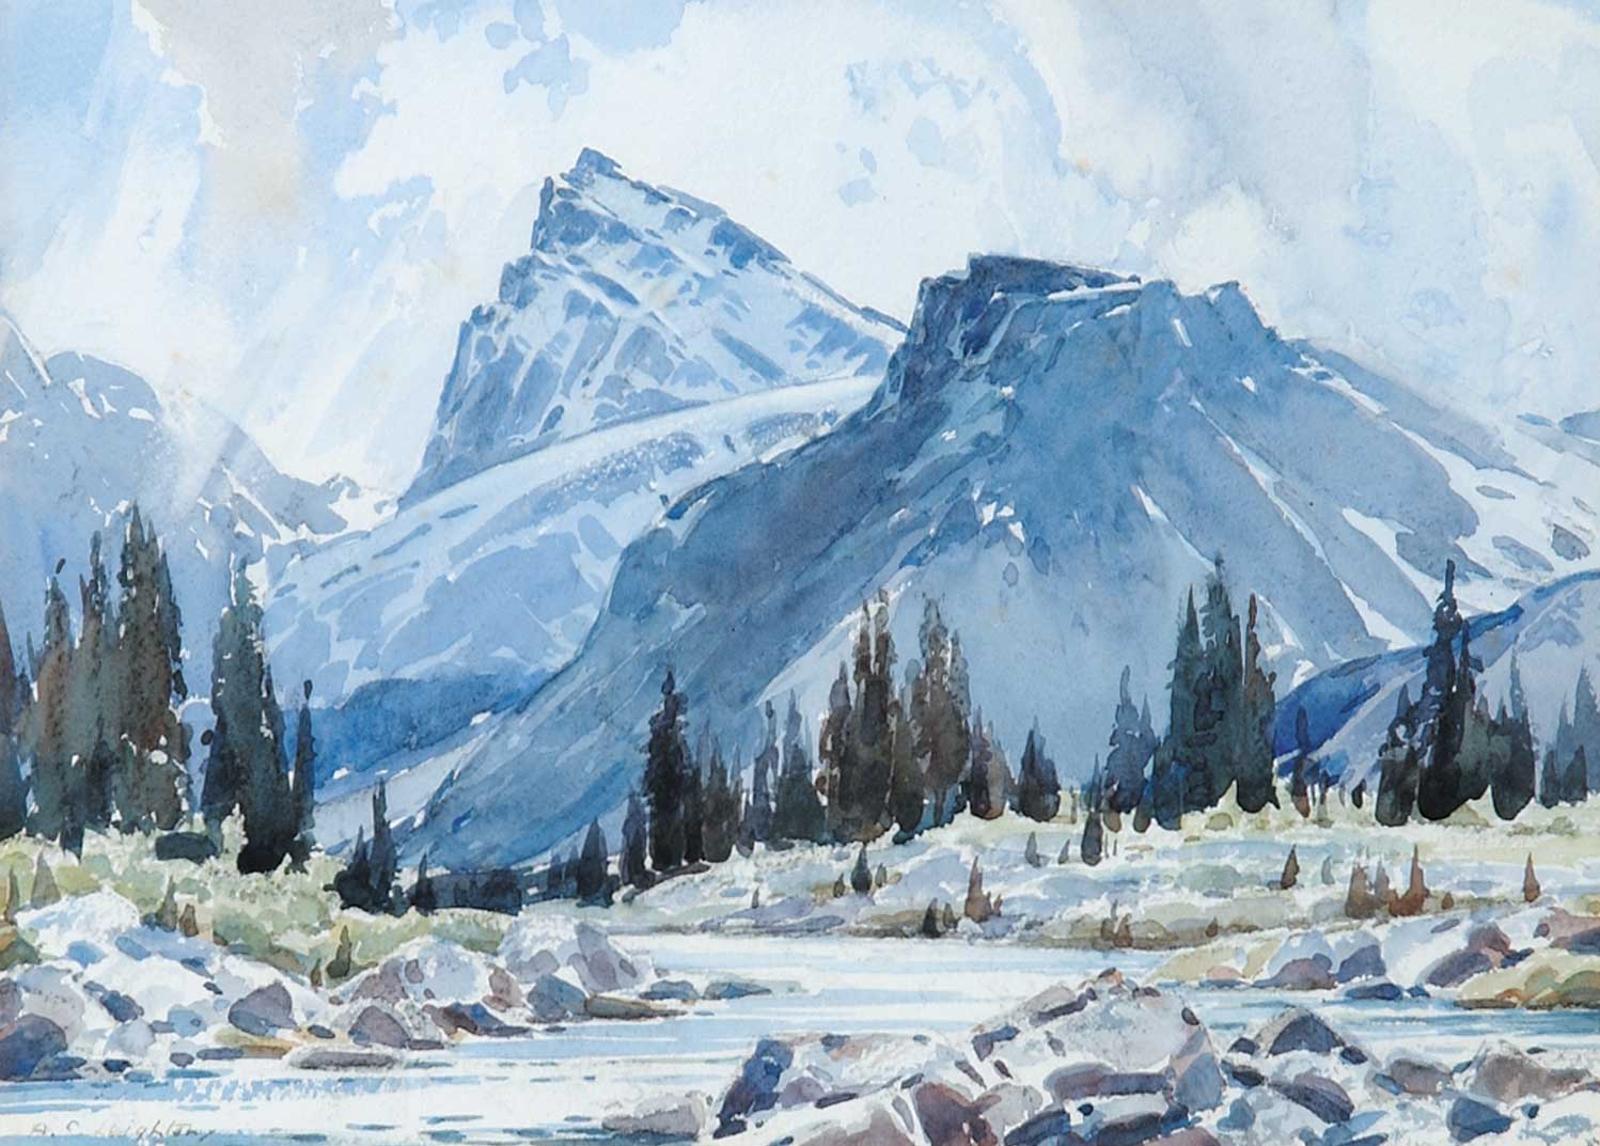 Alfred Crocker Leighton (1901-1965) - Mount Pitka at Skoki